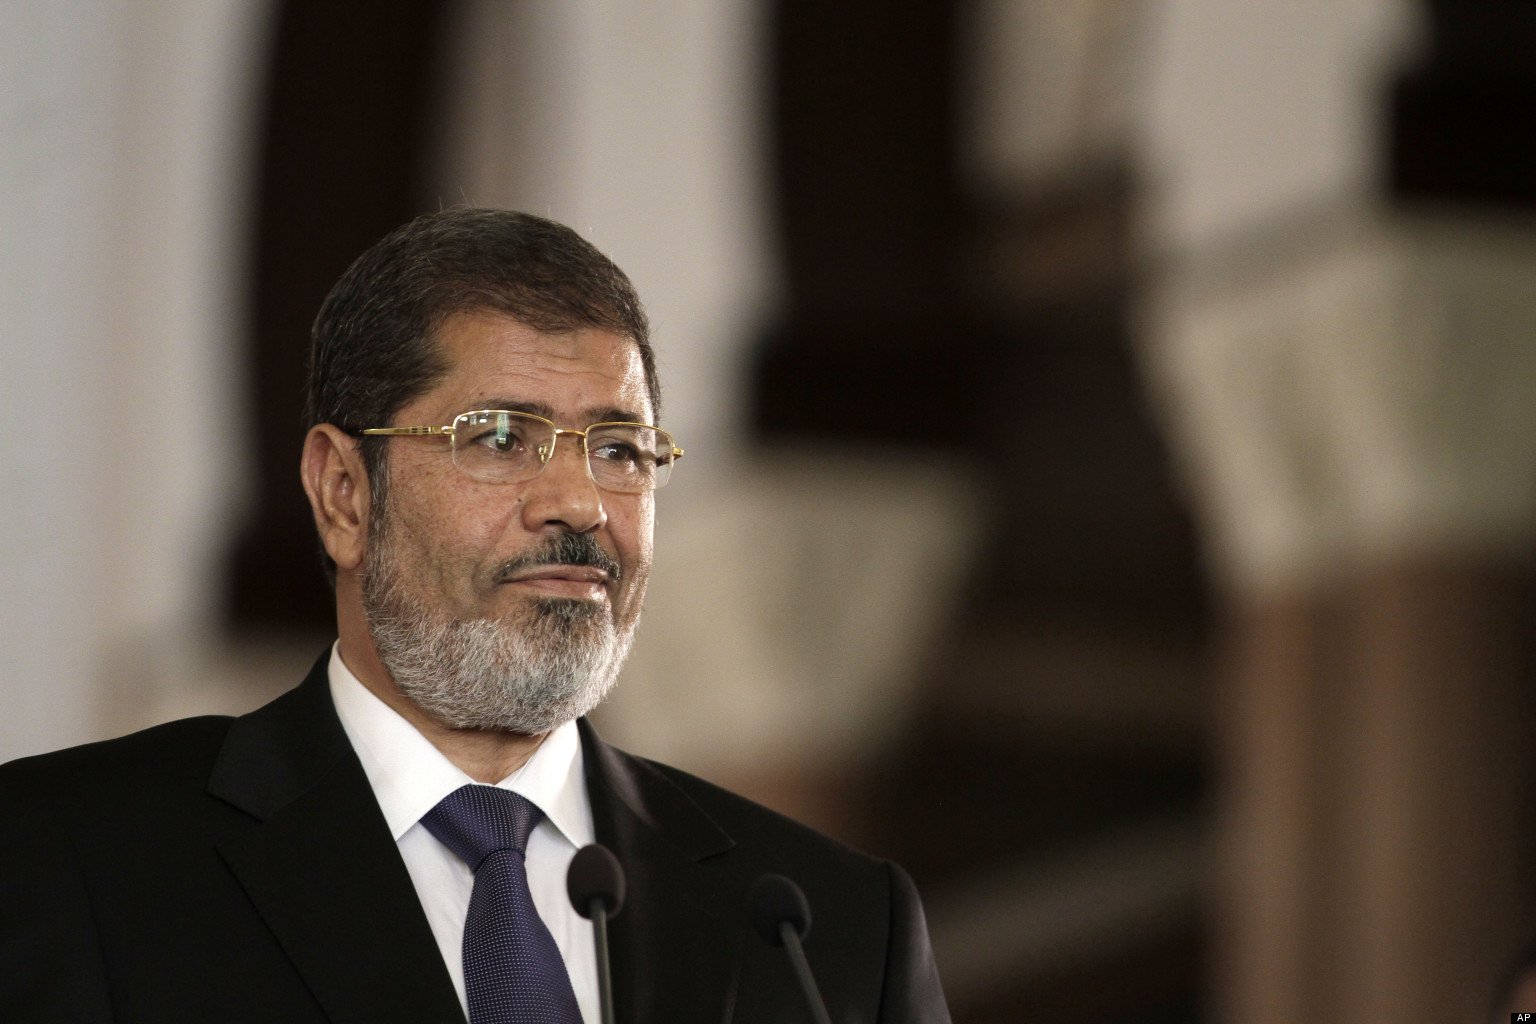 بعد حكم محكمة النقض ... مصير " مرسي " مرهون فقط بعفو من "السيسي"